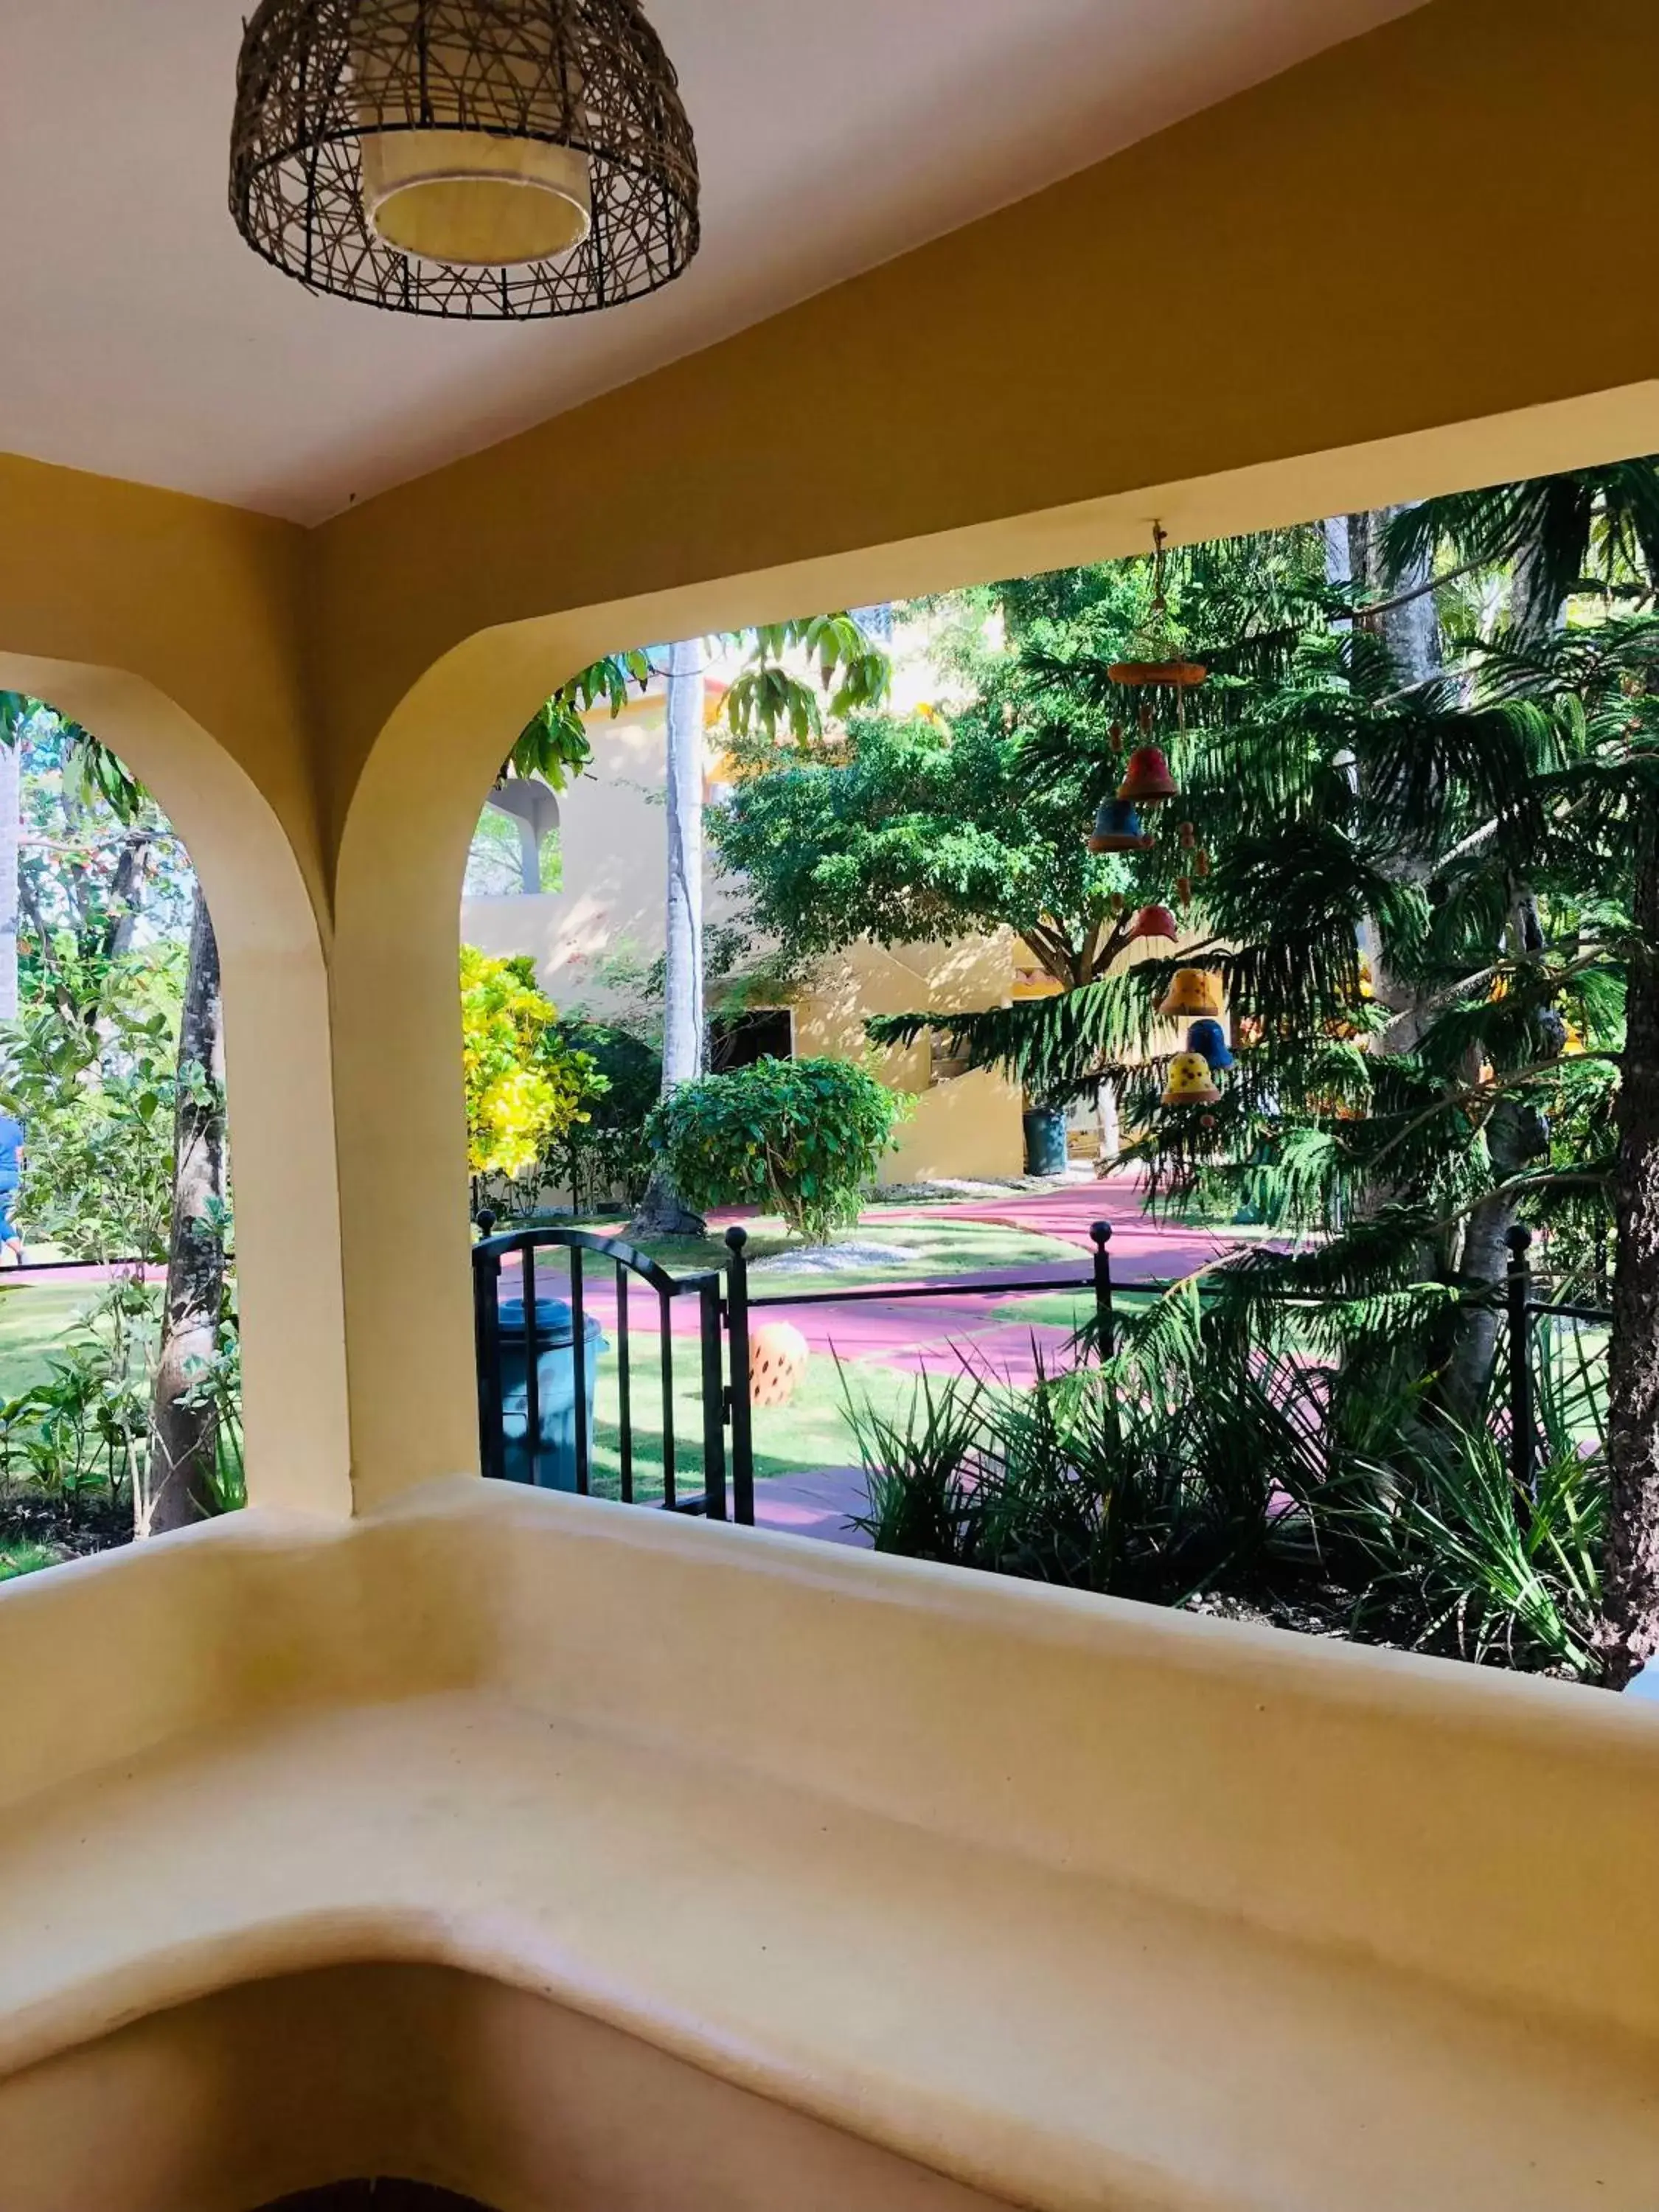 Villa with Garden View in Los Corales Luxury Villas Beach Club and Spa